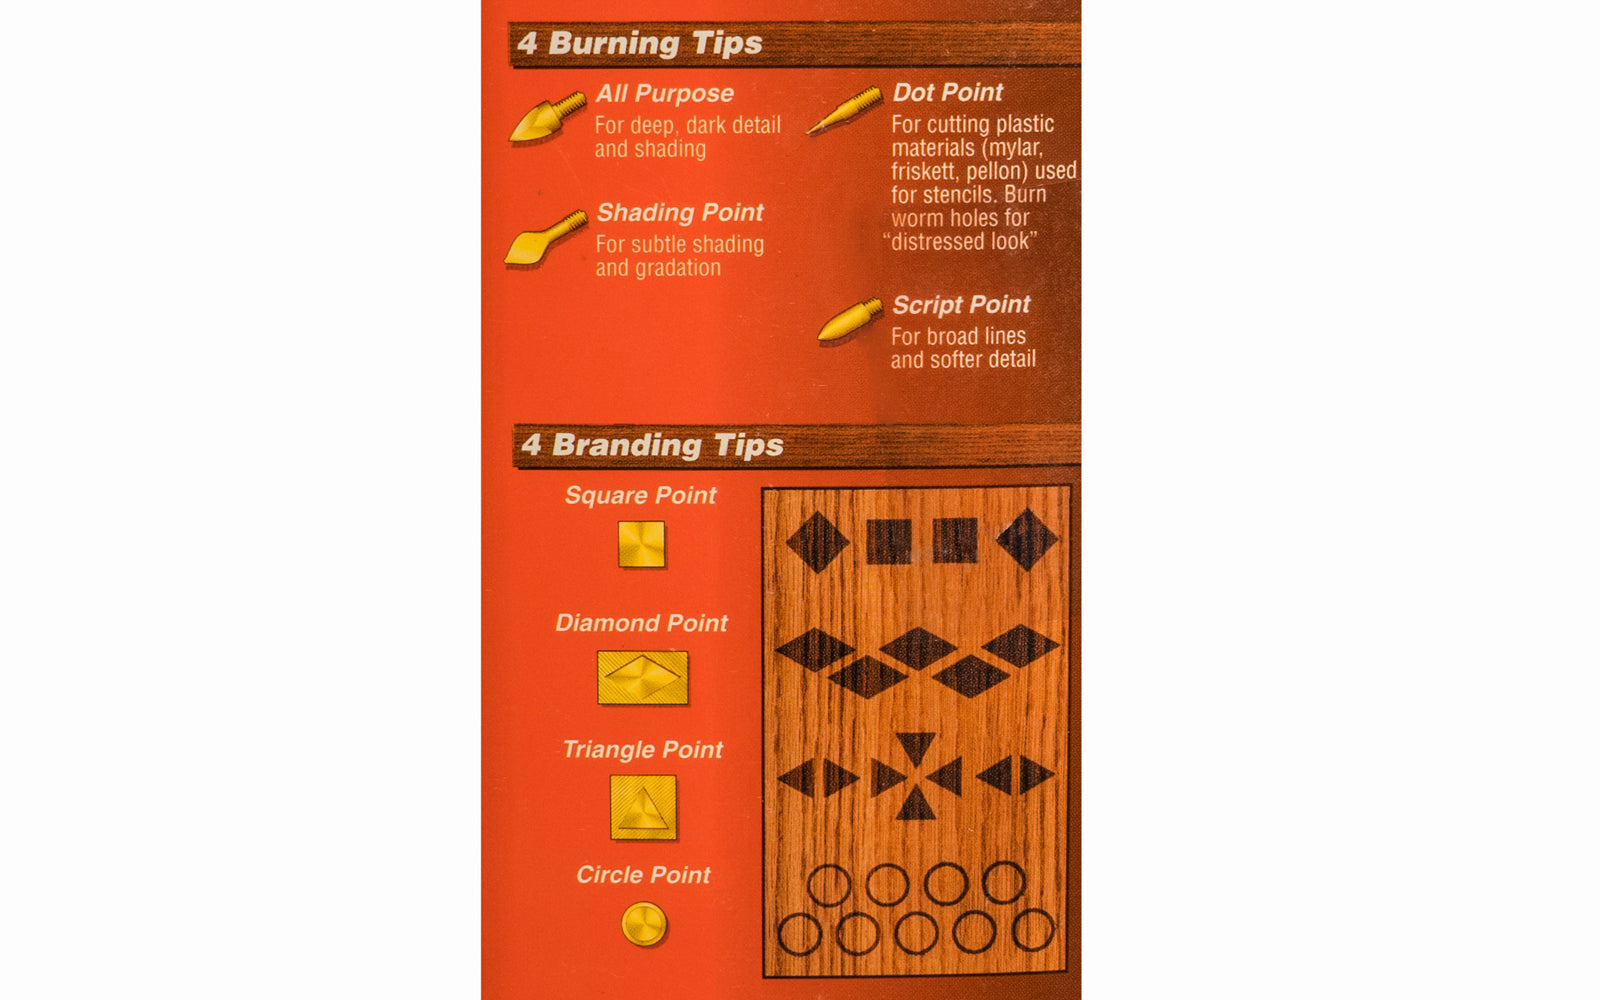 Woodburning Tips: Shading Point Uses